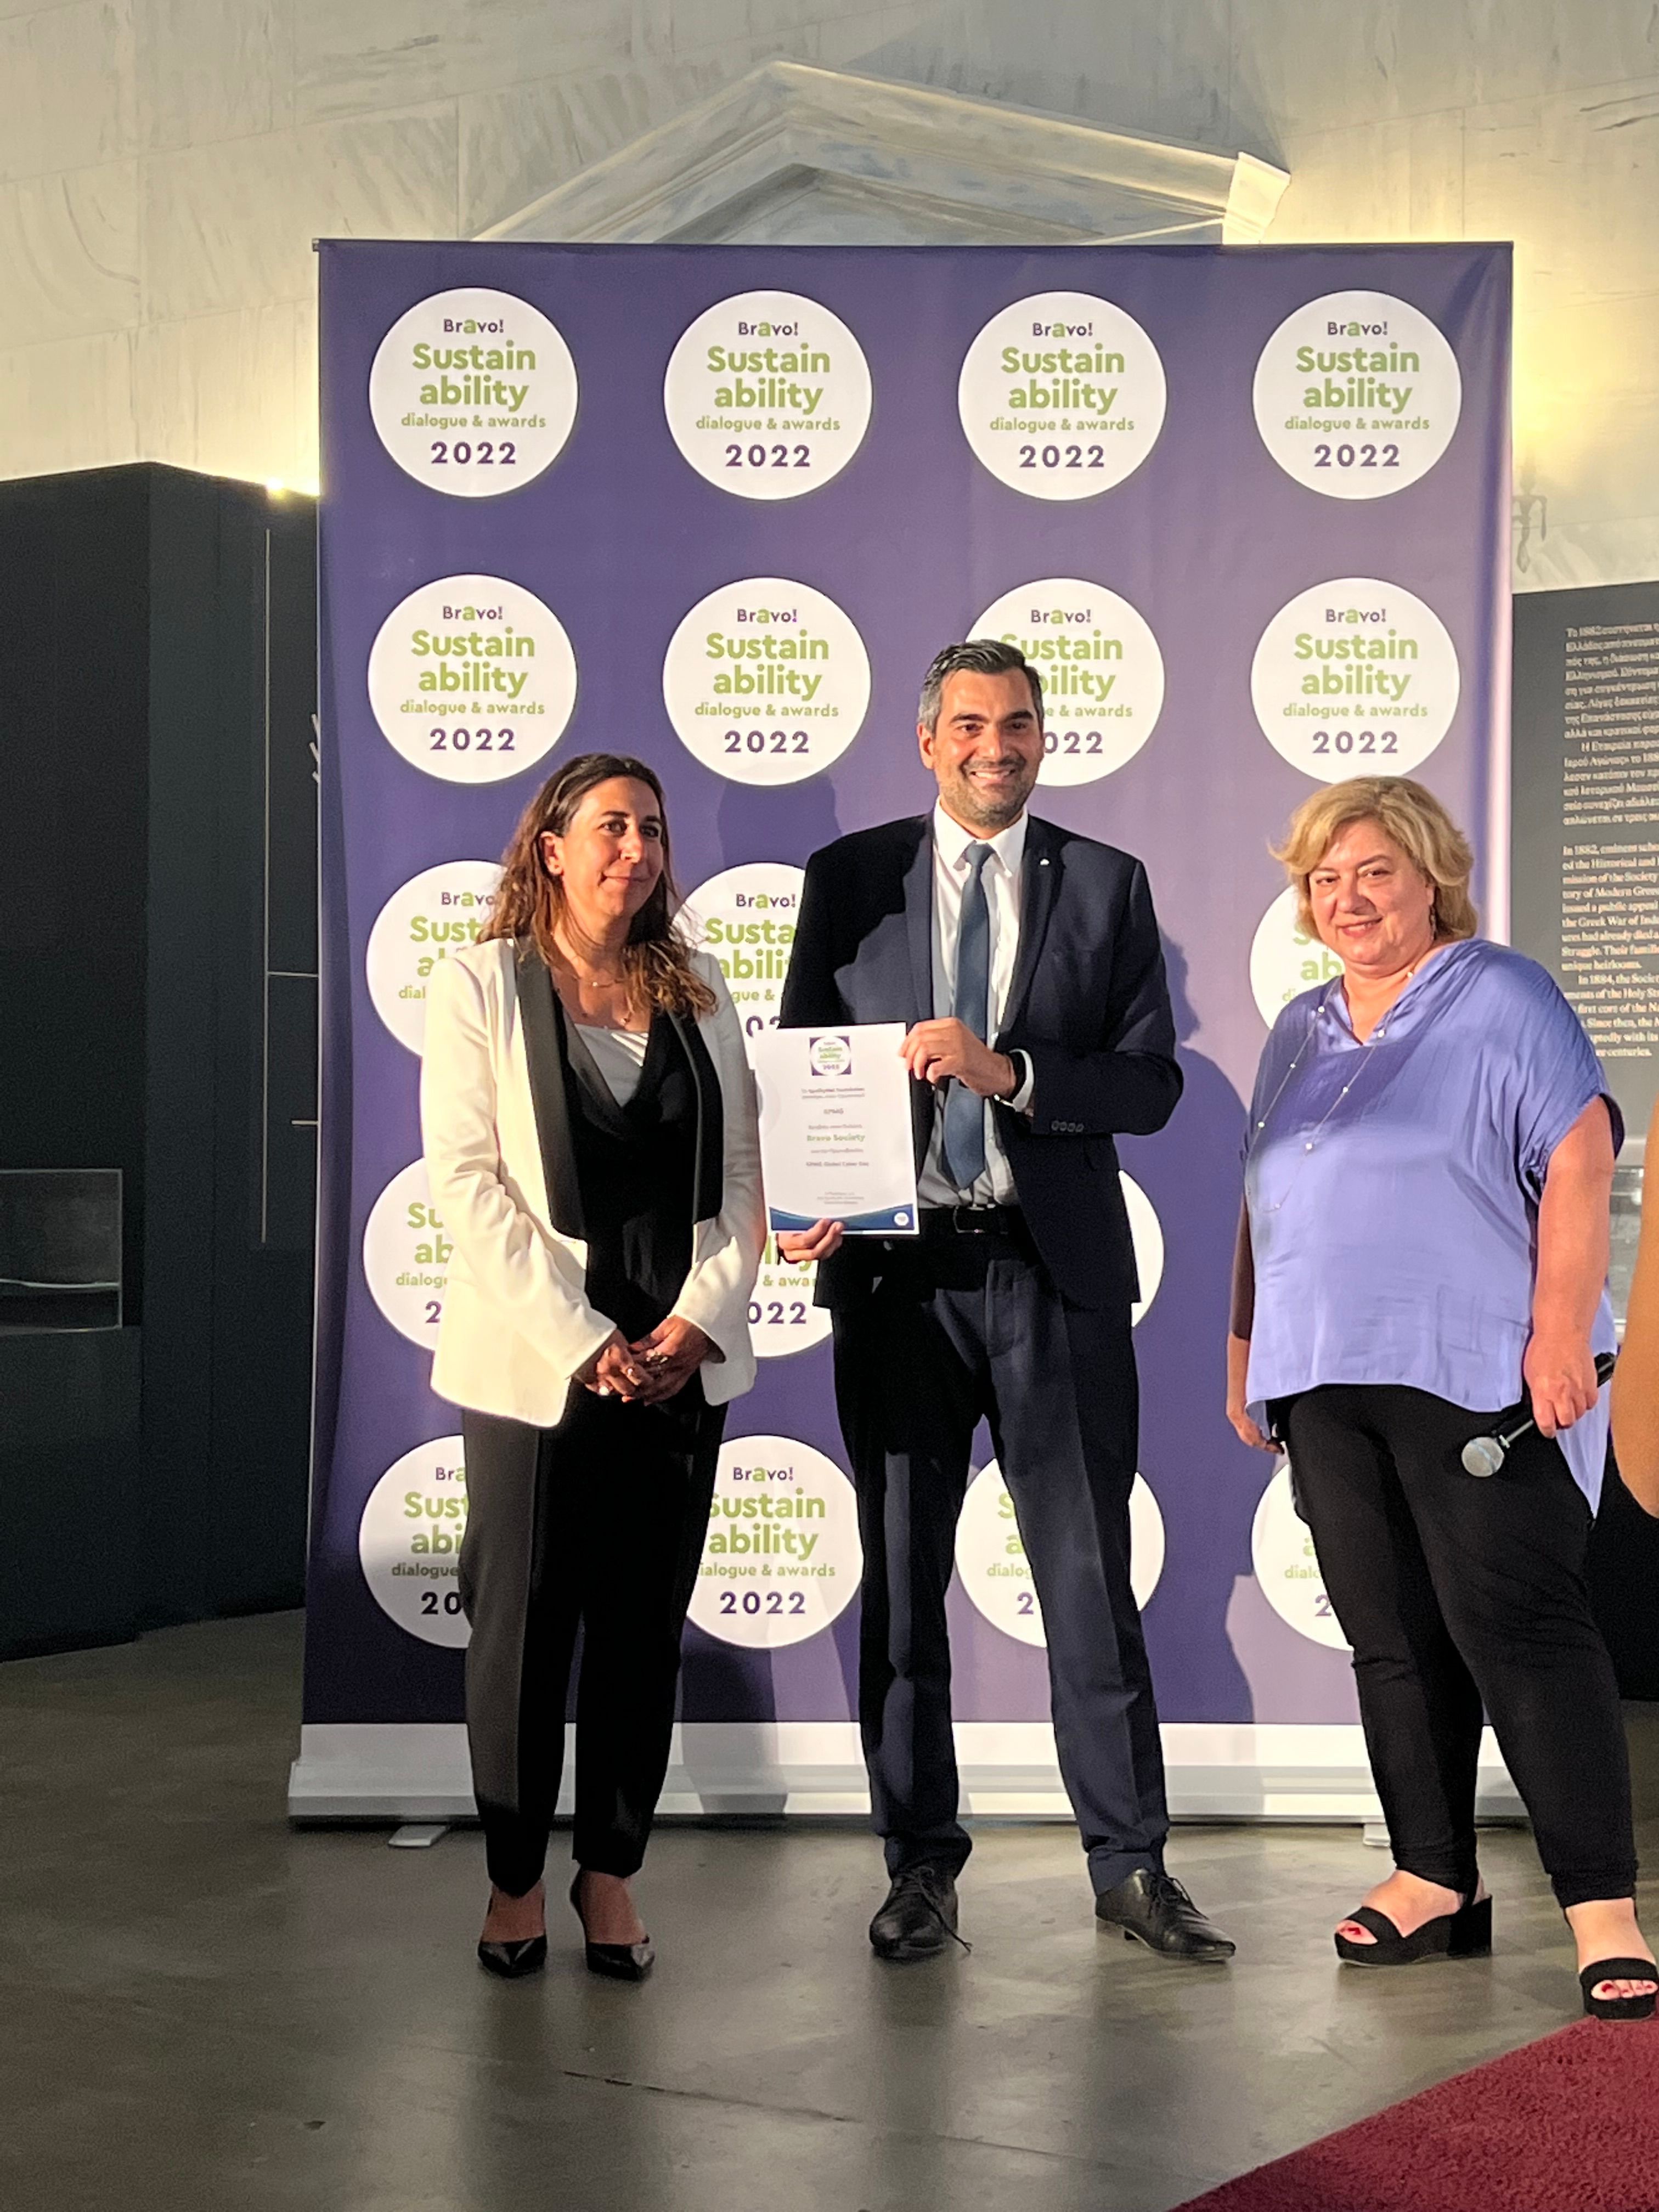 Niovi Sarris and Alcibiades Siaravas receive KPMG's award at Bravo Sustainability Dialogues & Awards